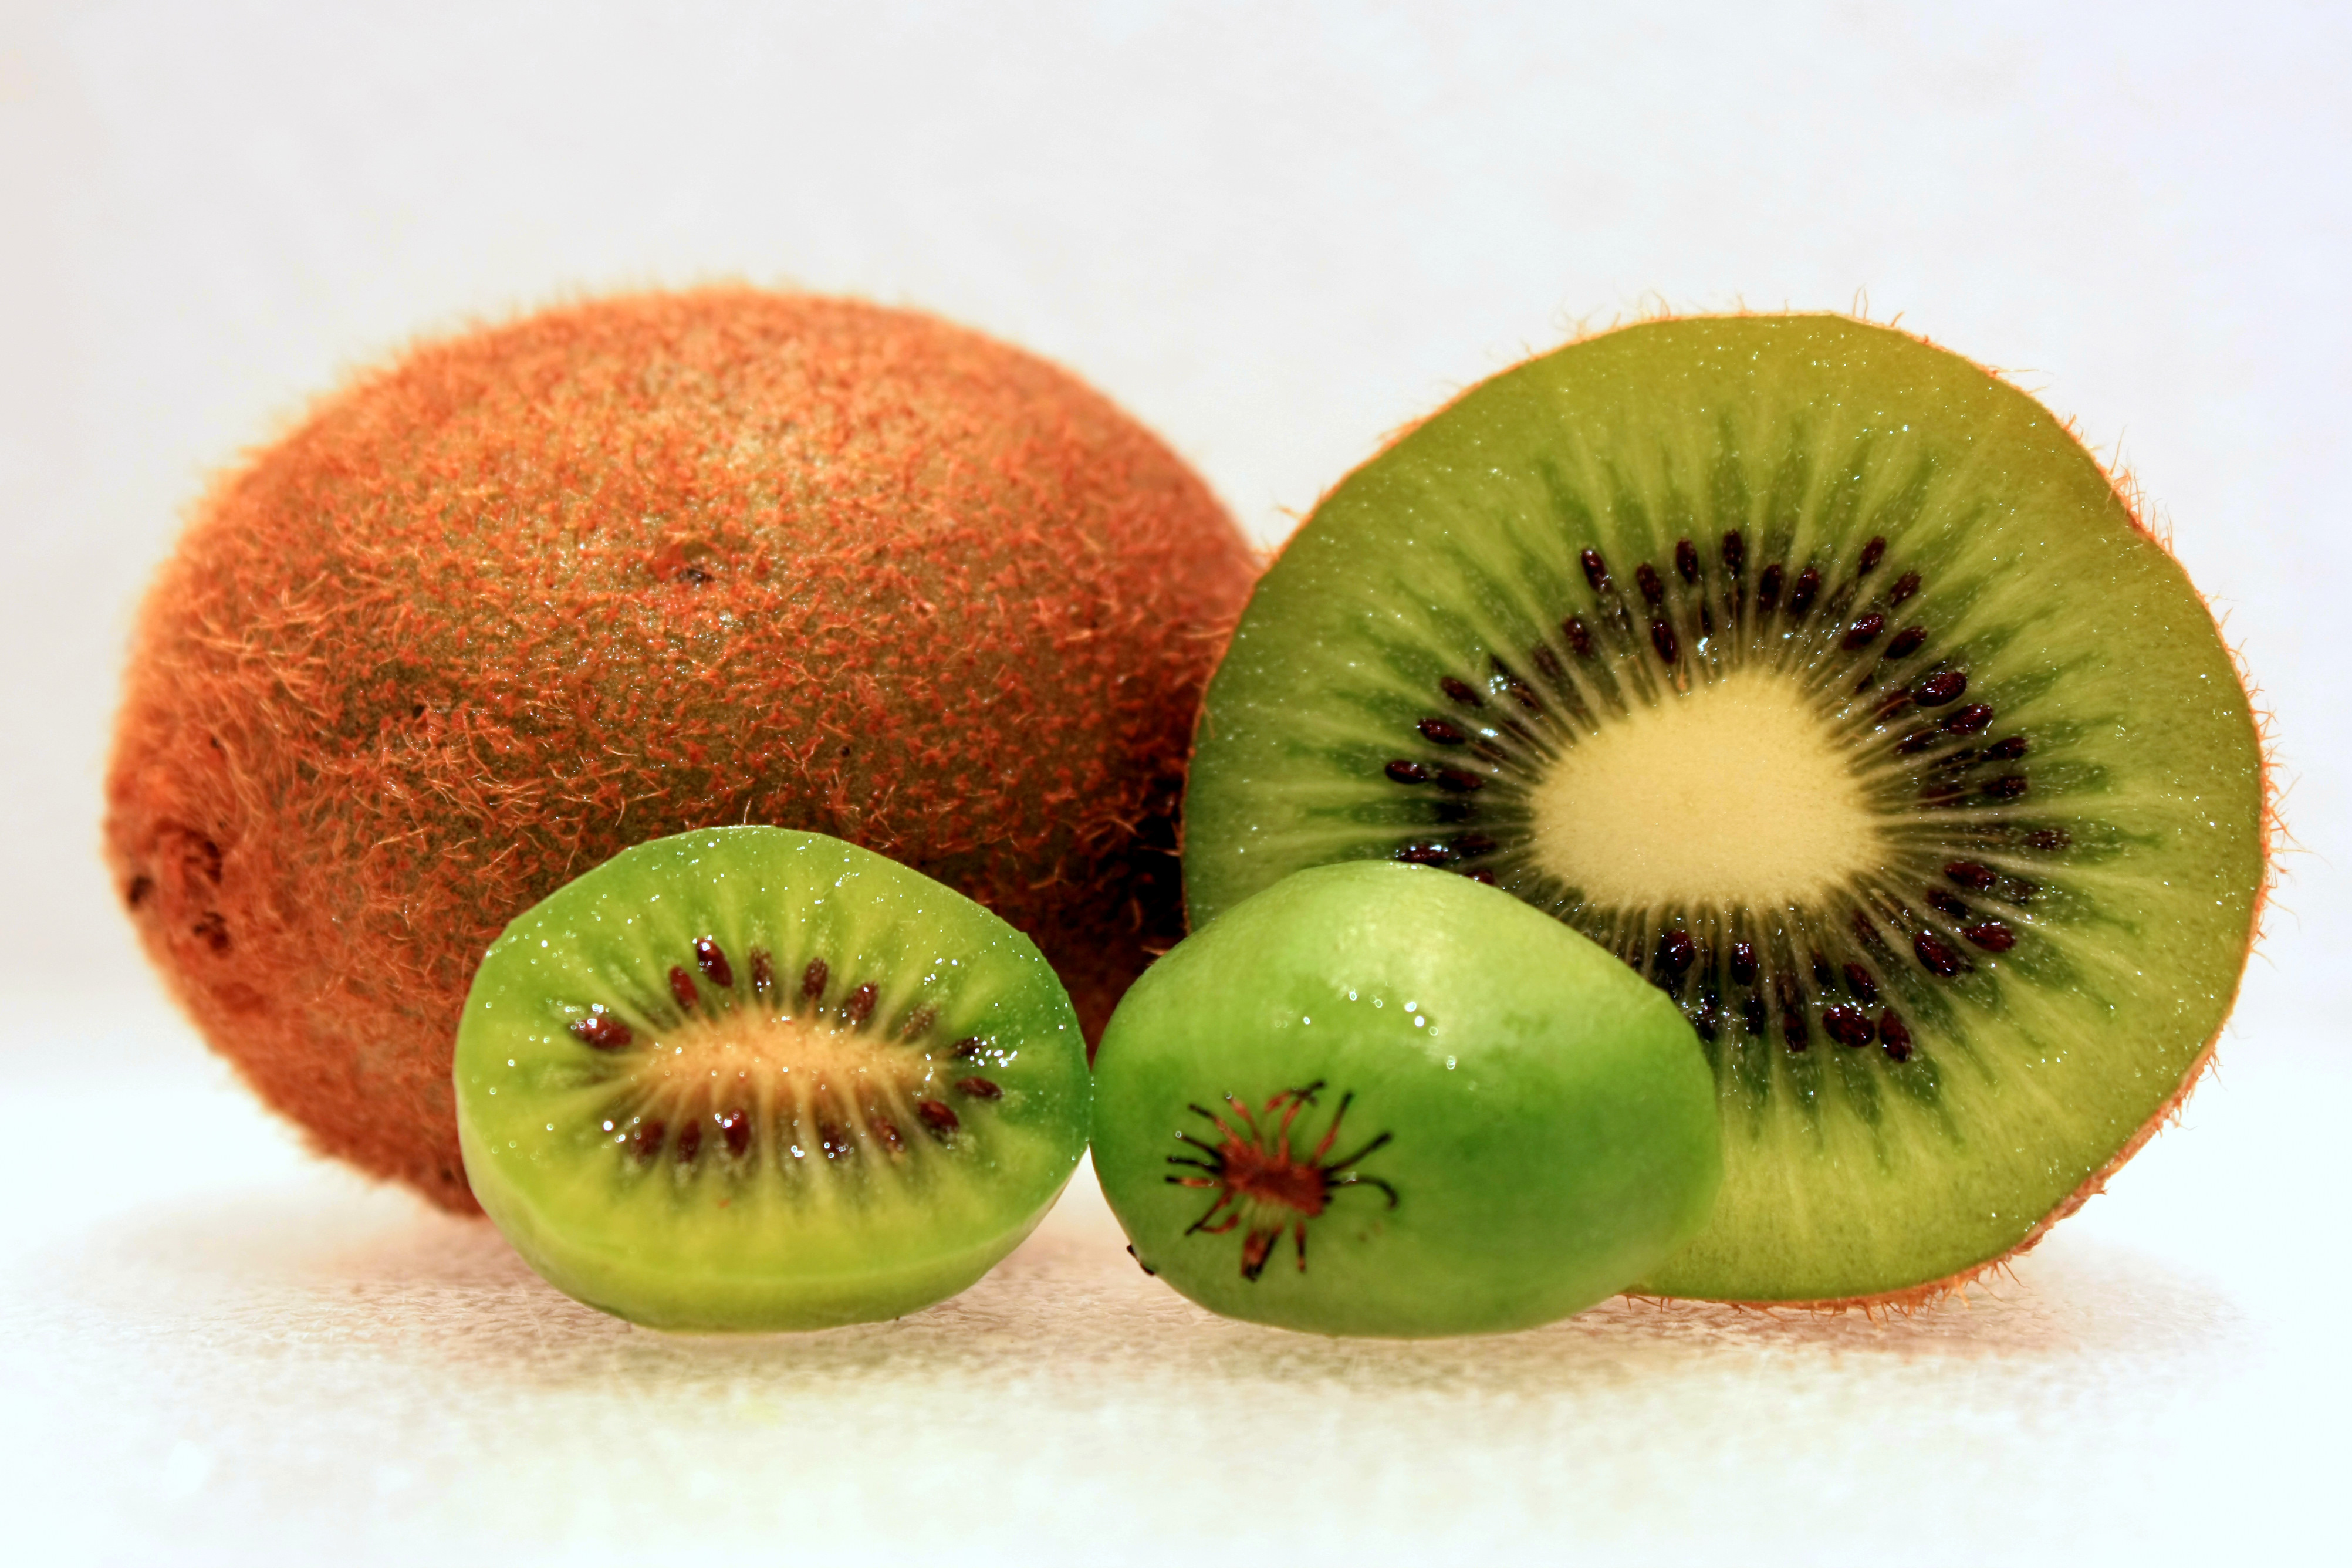 These berries look and taste like kiwi. : mildlyinteresting